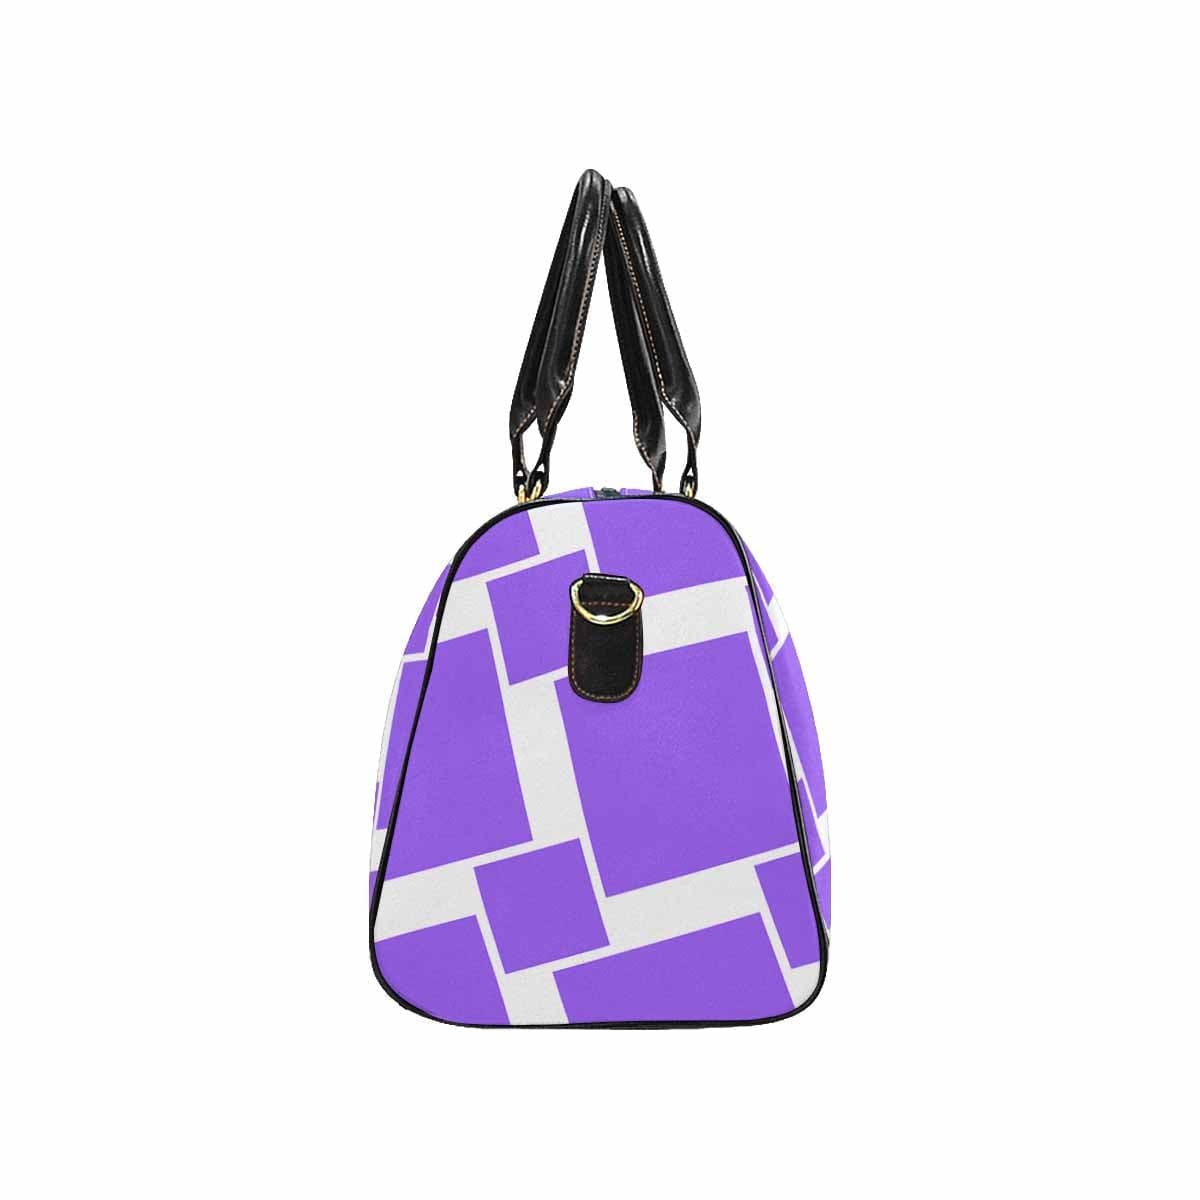 Travel Bag Adjustable Shoulder Strap Carry On Bag Lavendar - Bags | Travel Bags